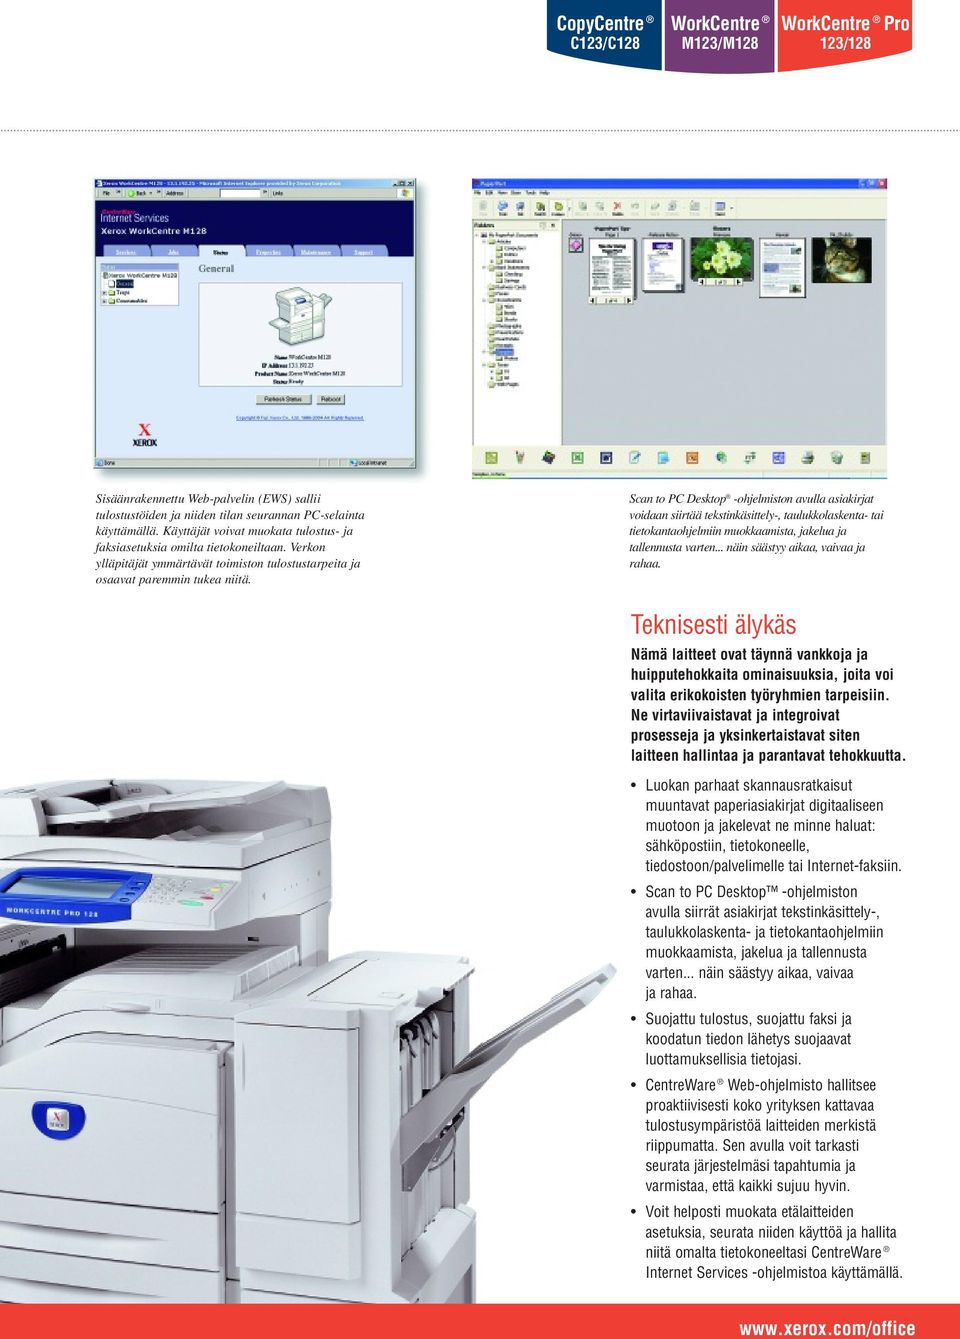 Scan to PC Desktop -ohjelmiston avulla asiakirjat voidaan siirtää tekstinkäsittely-, taulukkolaskenta- tai tietokantaohjelmiin muokkaamista, jakelua ja tallennusta varten.